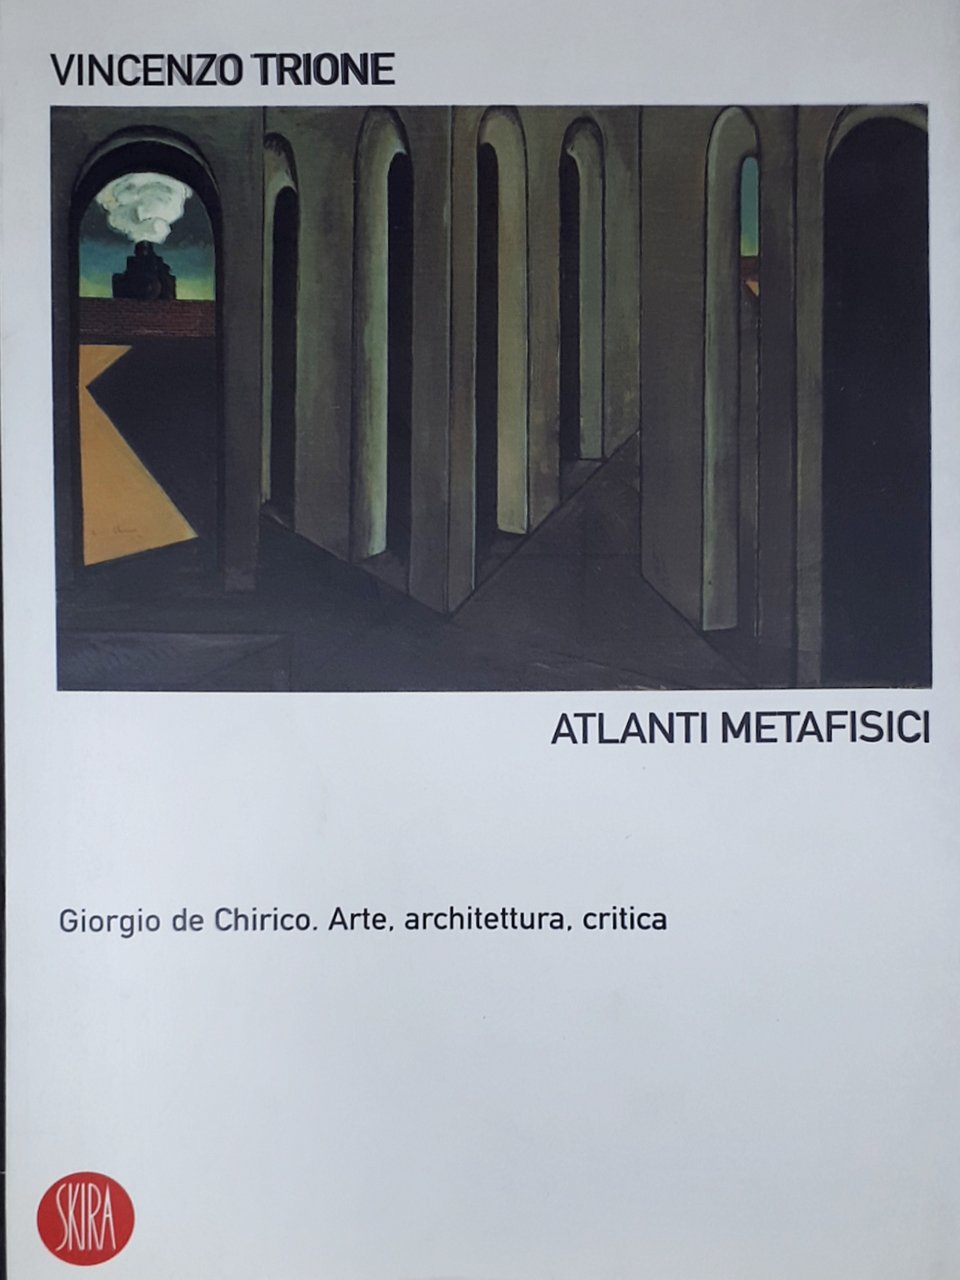 V. Trione - Atlanti metafisici - Giorgio de Chirico - …